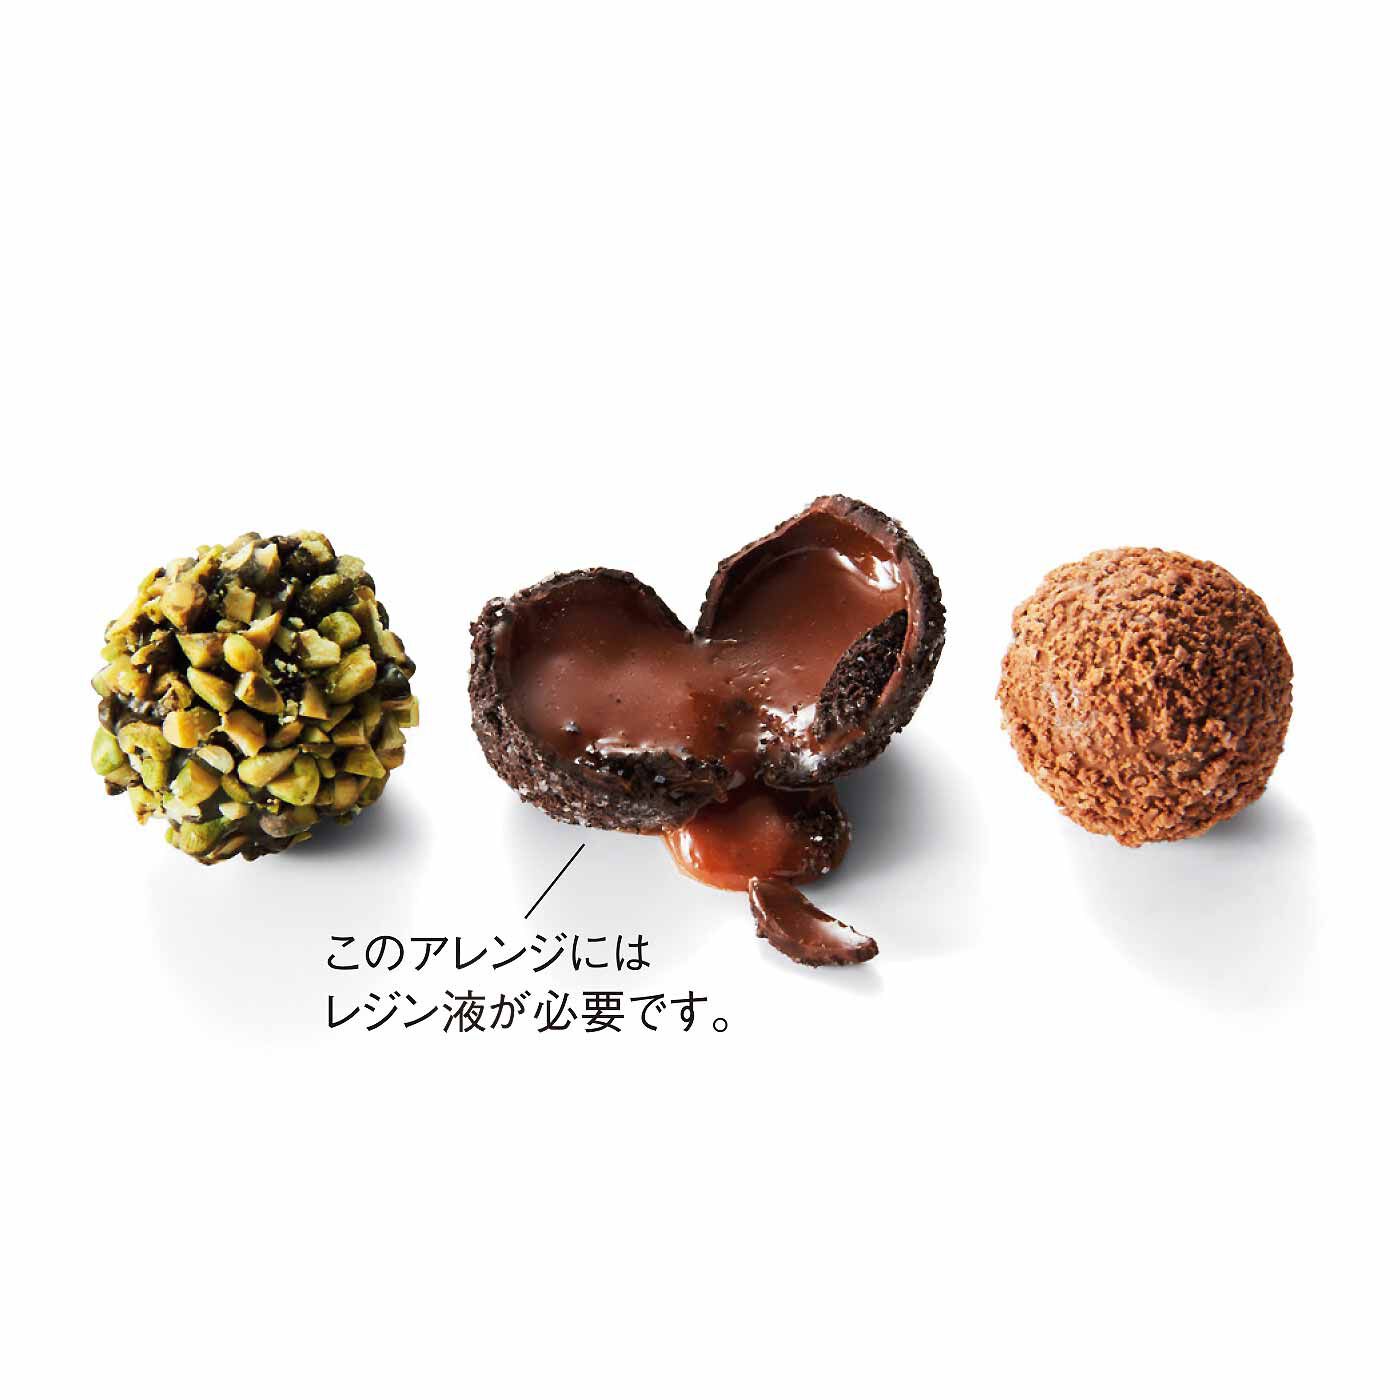 Couturier|「幸福（しあわせ）のチョコレート」とコラボ 樹脂粘土で作る 食べられないチョコレートの会|トリュフタイプ